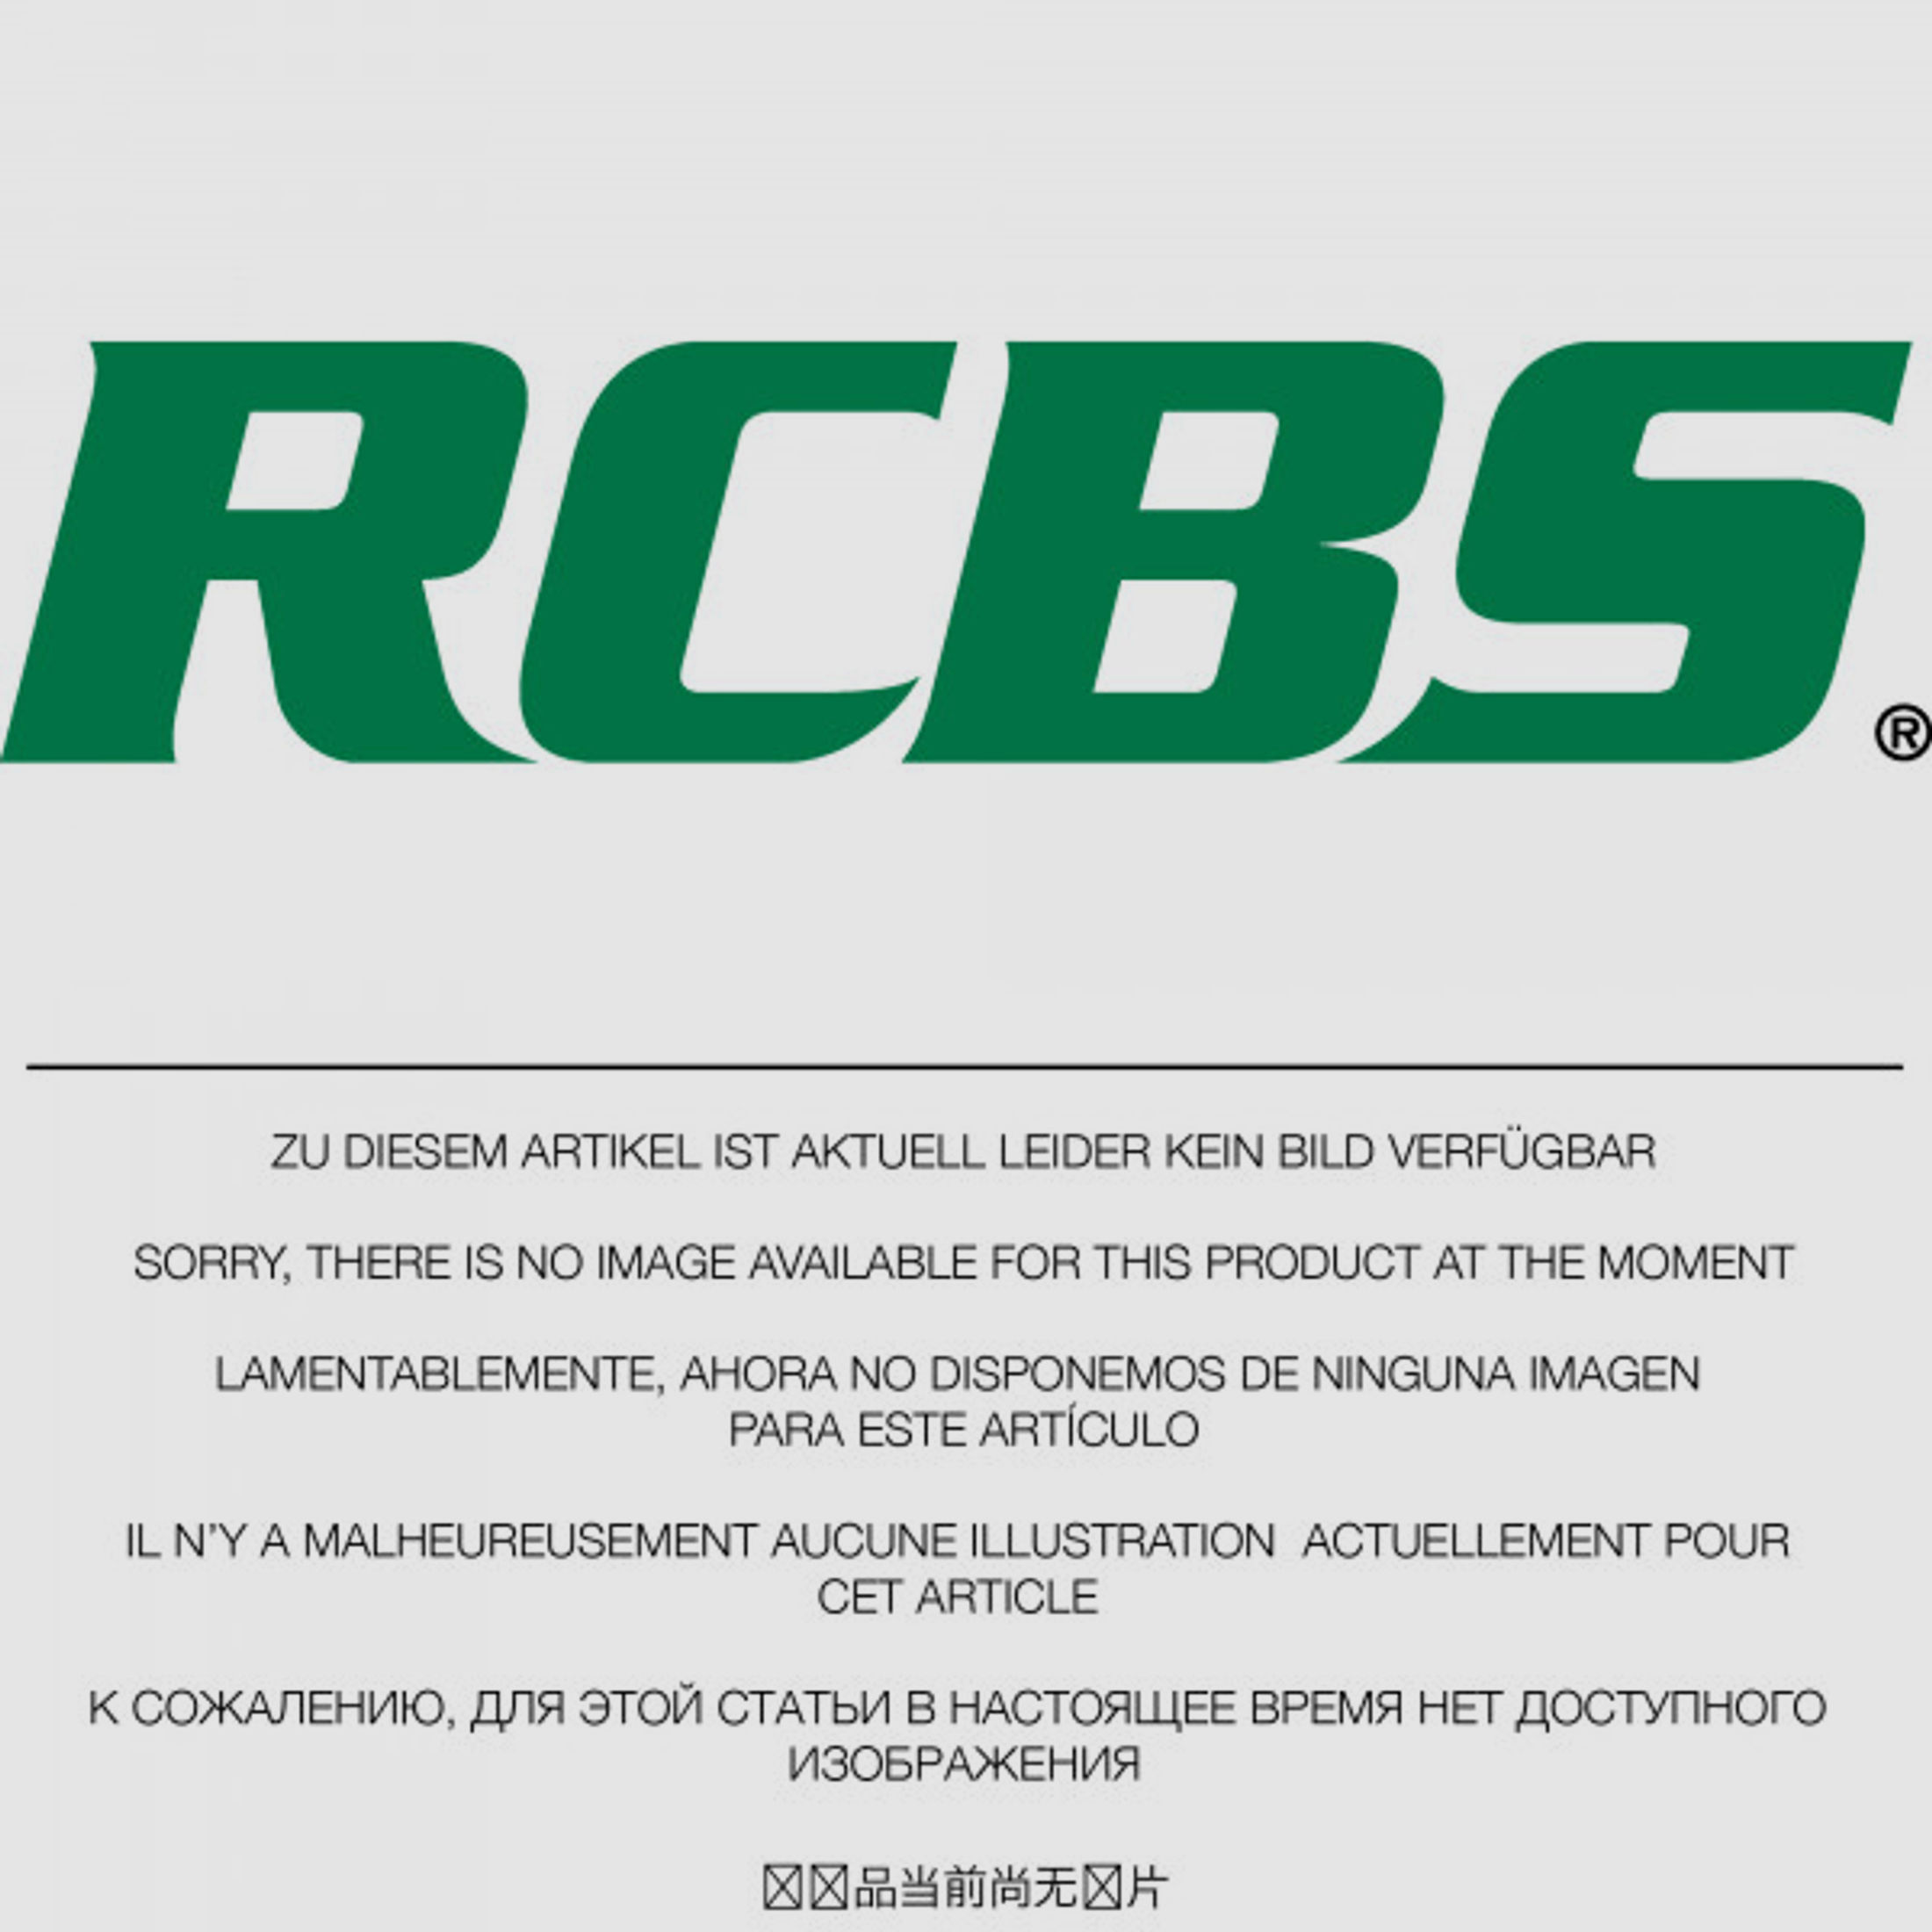 RCBS Lube-A-Matic Top Punch Geschoss Setzstempel Nr. 383 #85583